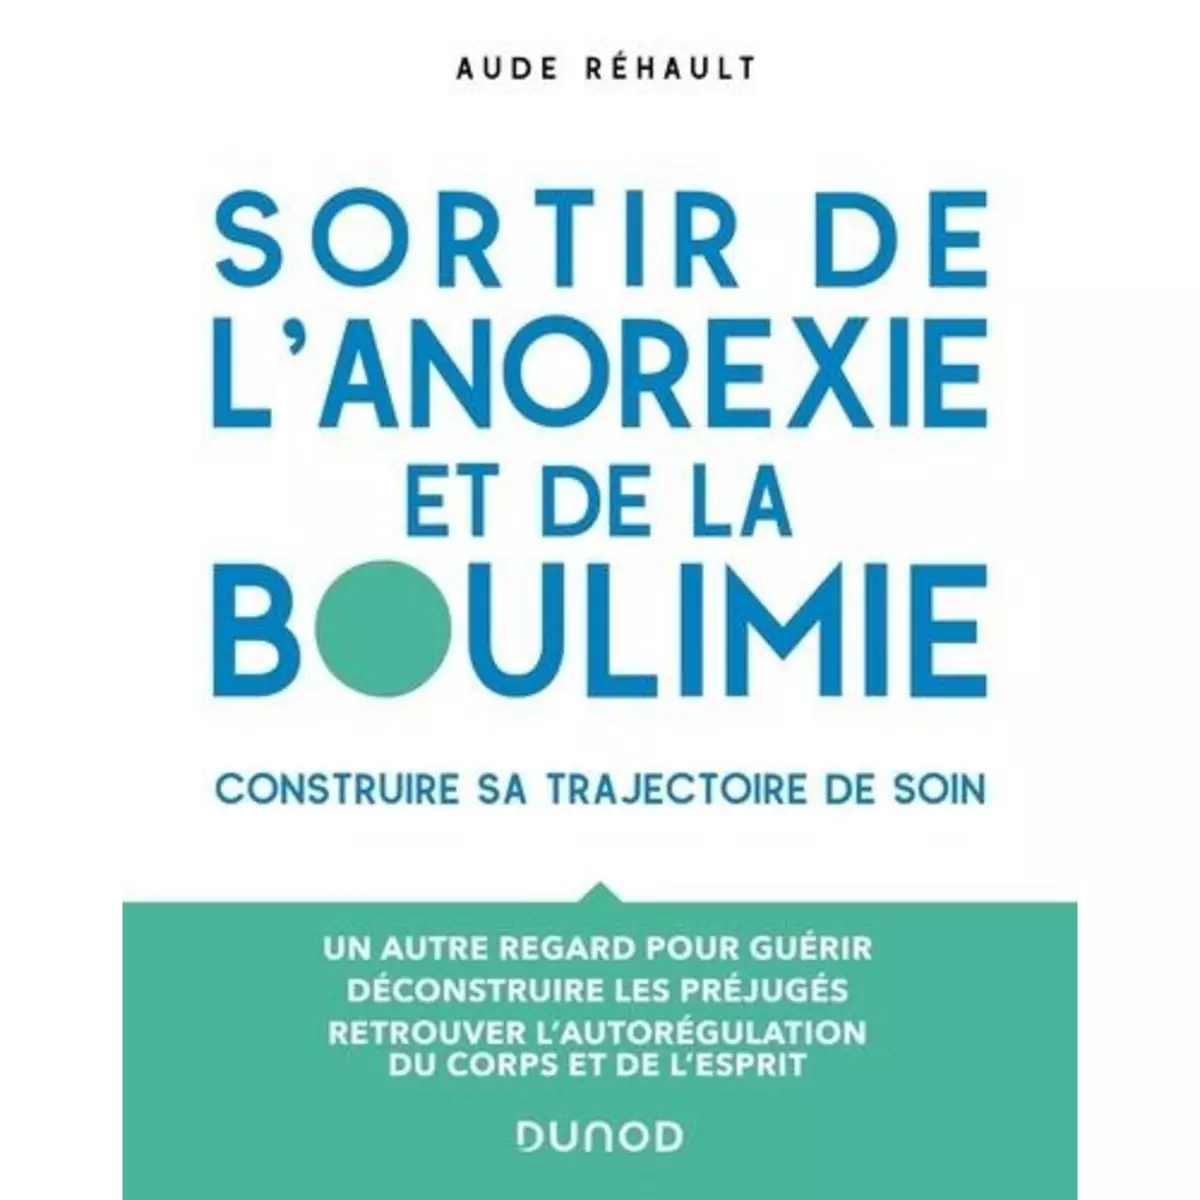  SORTIR DE L'ANOREXIE ET DE LA BOULIMIE. CONSTRUIRE SA TRAJECTOIRE DE SOIN, Rehault Aude